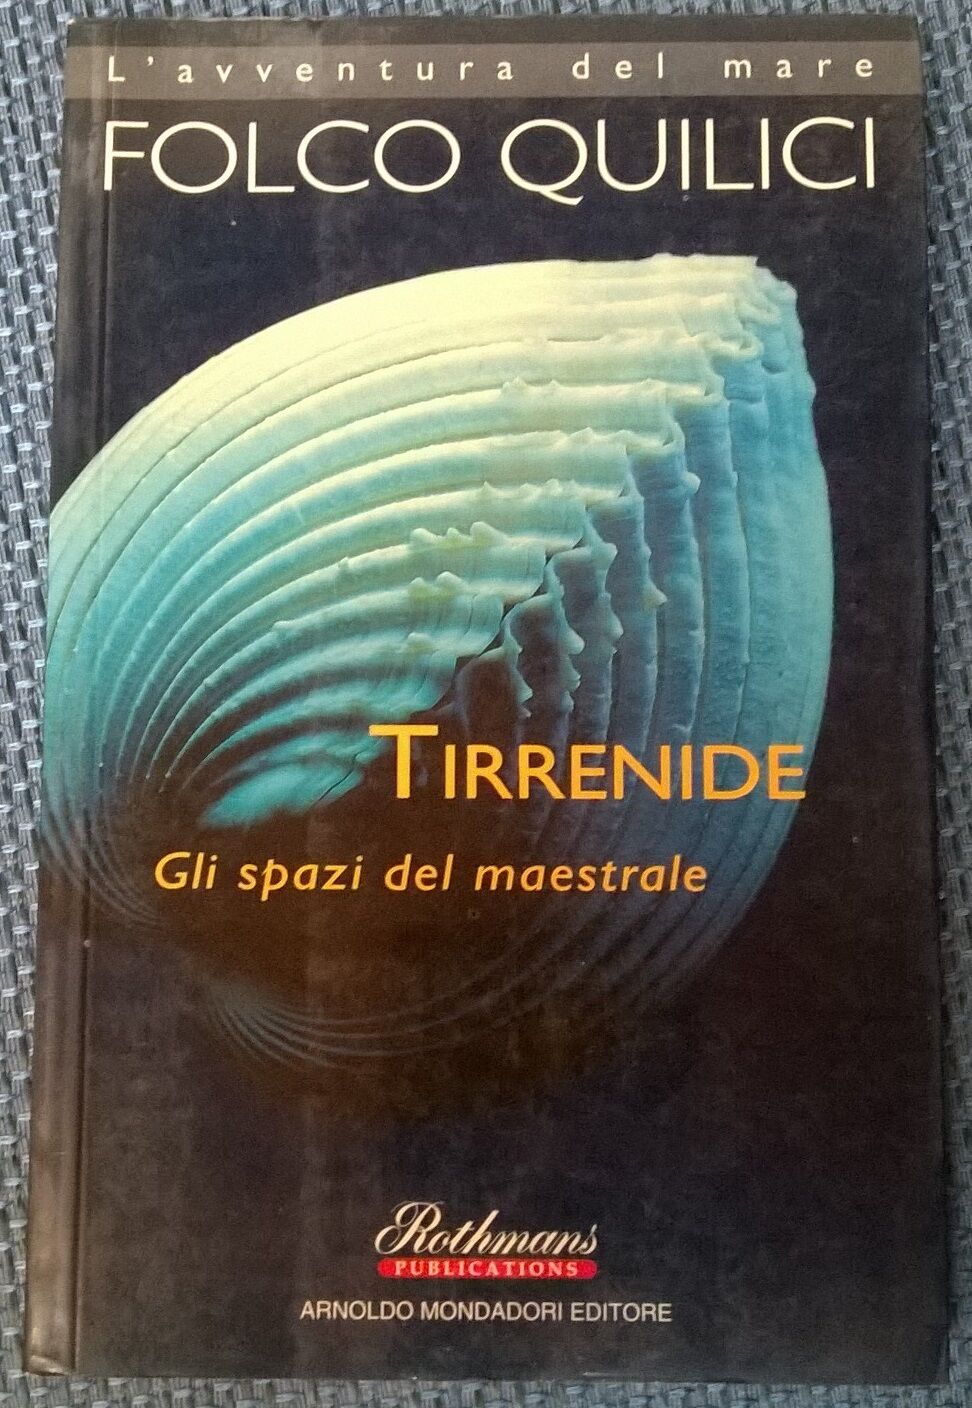 Tirrenide. Gli spazi del maestrale  - Folco Quilici - 1996, Mondadori - L 